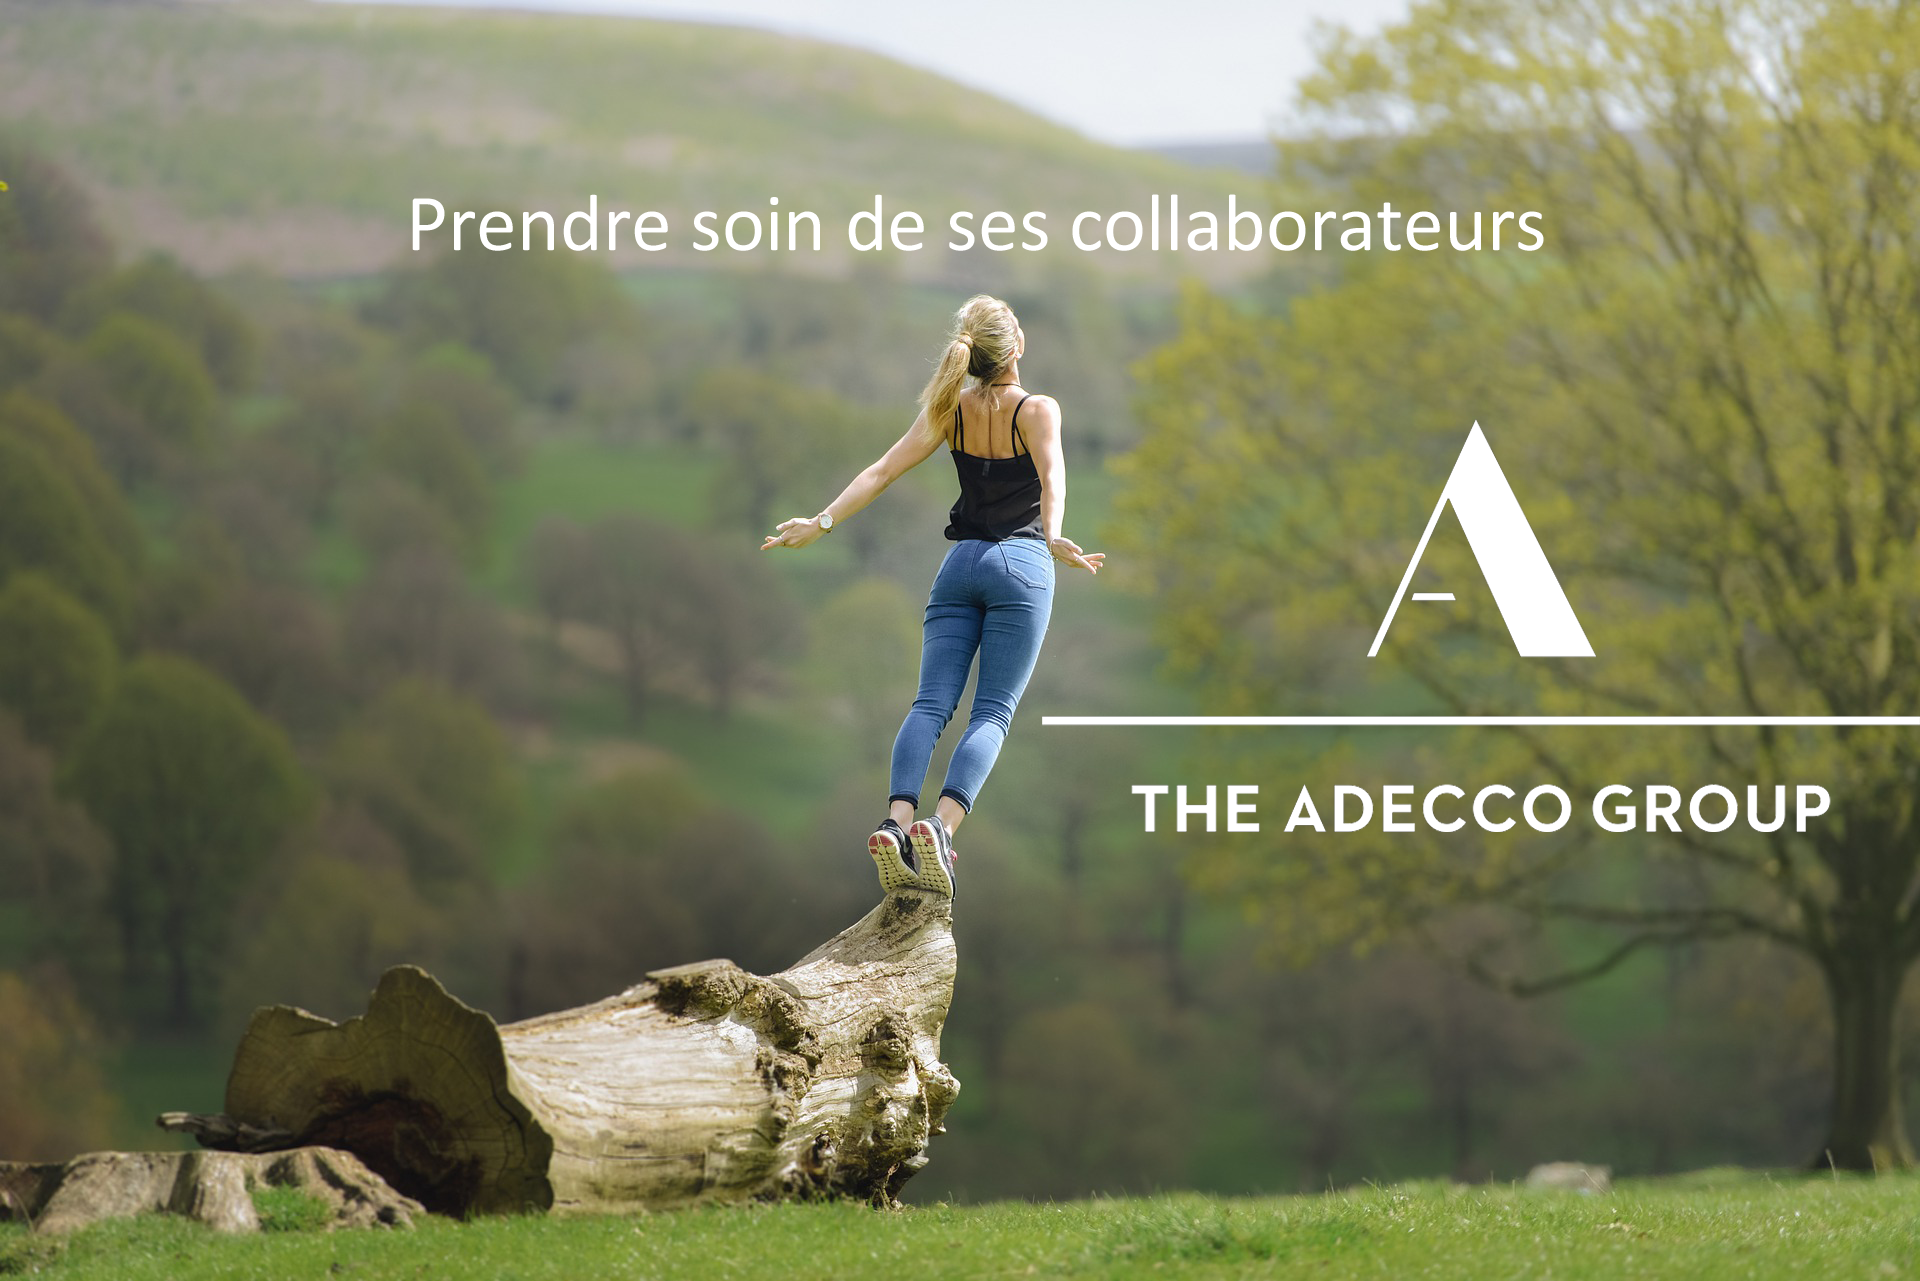 Le groupe Adecco prend soin de ses collaborateurs permanents avec un programme digital 